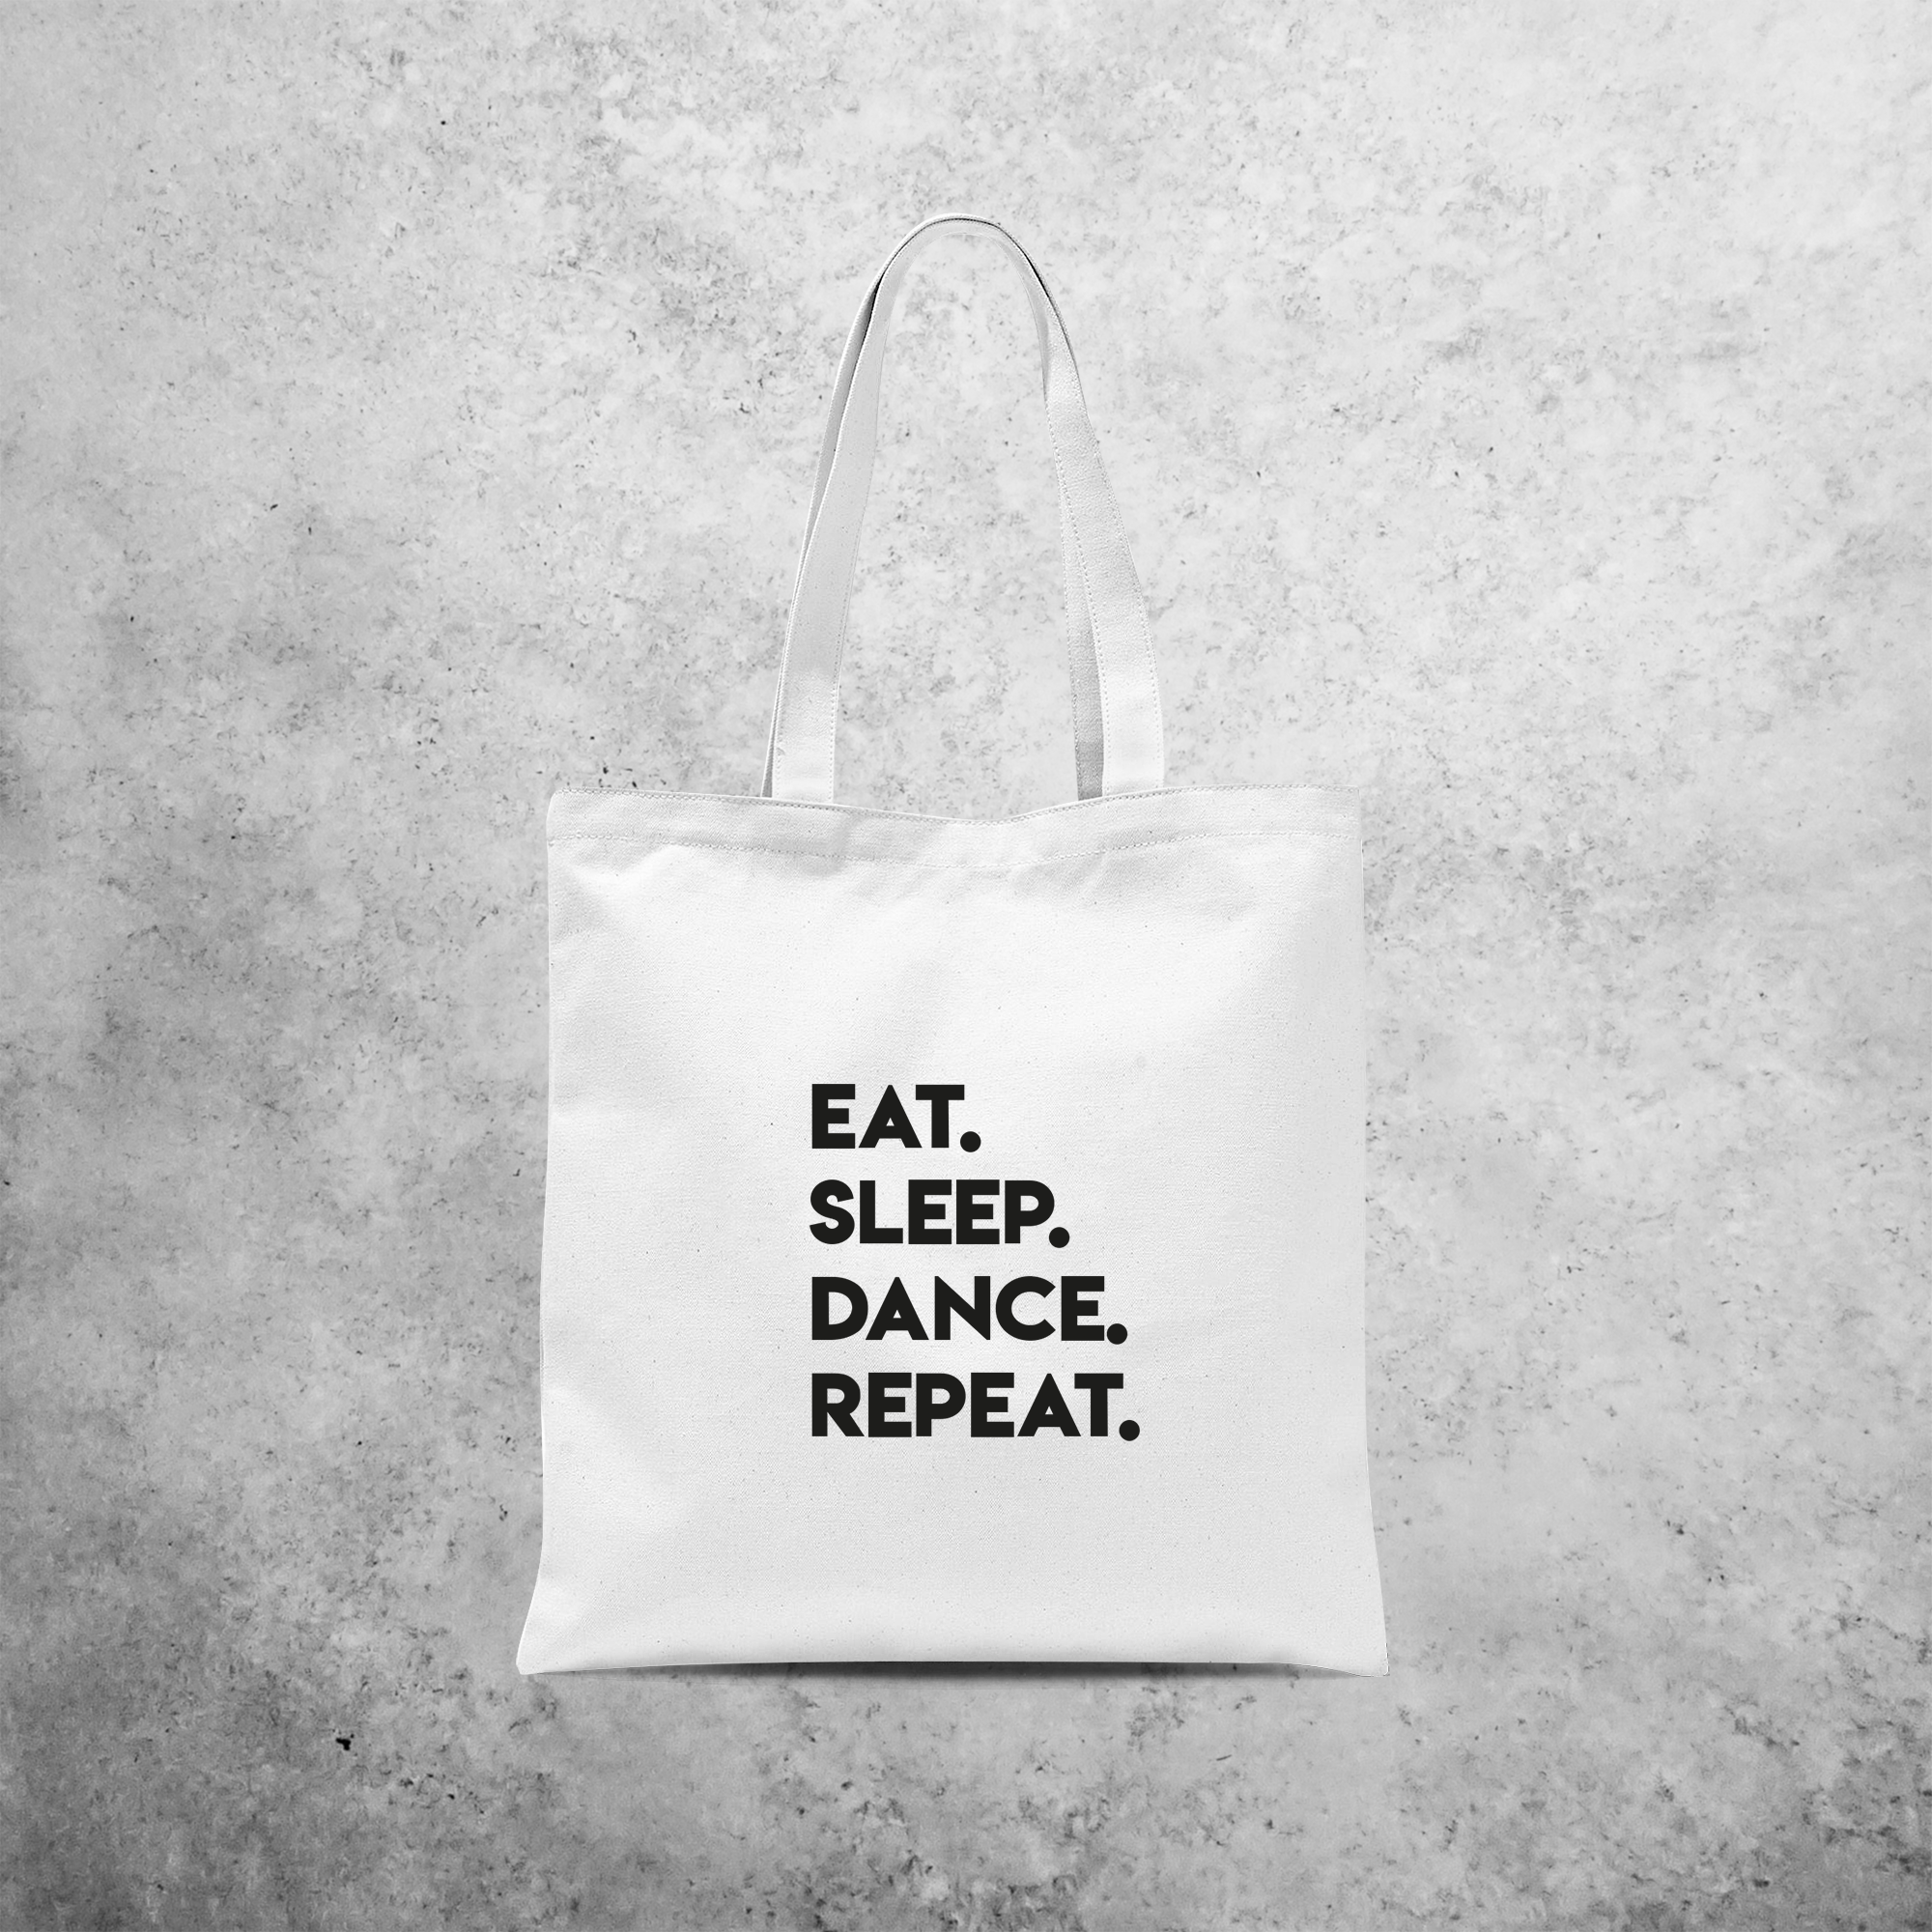 'Eat. Sleep. Dance. Repeat.' tote bag